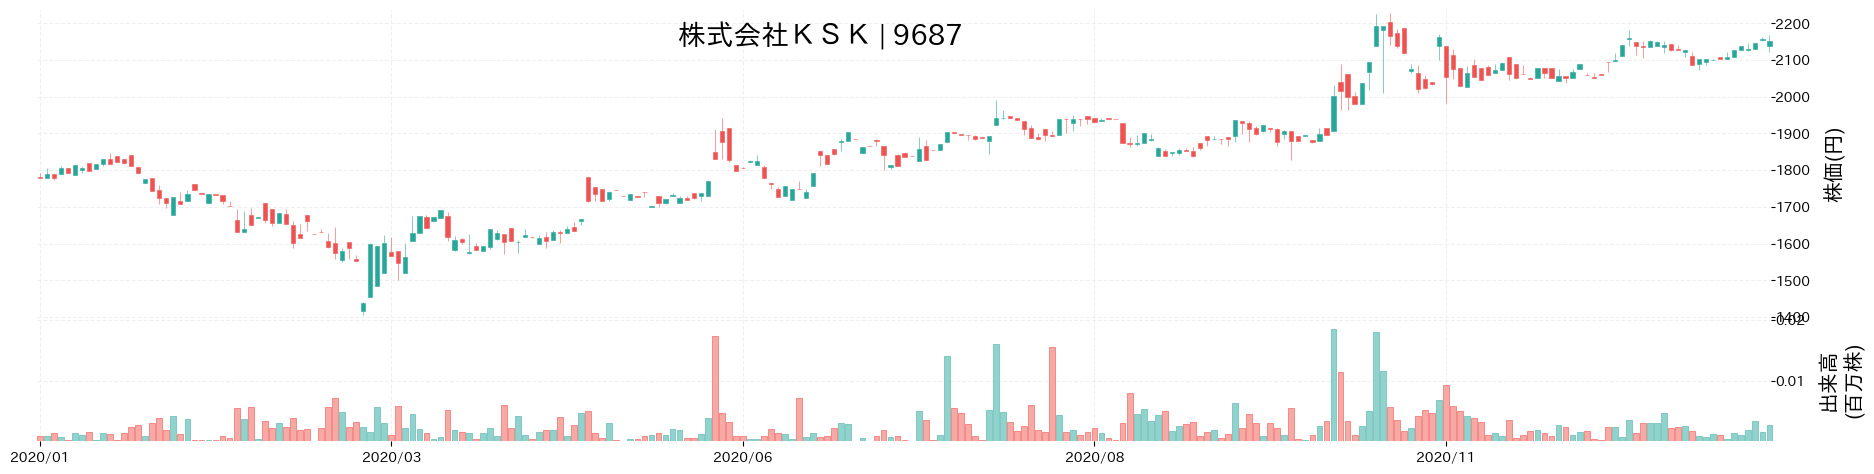 KSKの株価推移(2020)